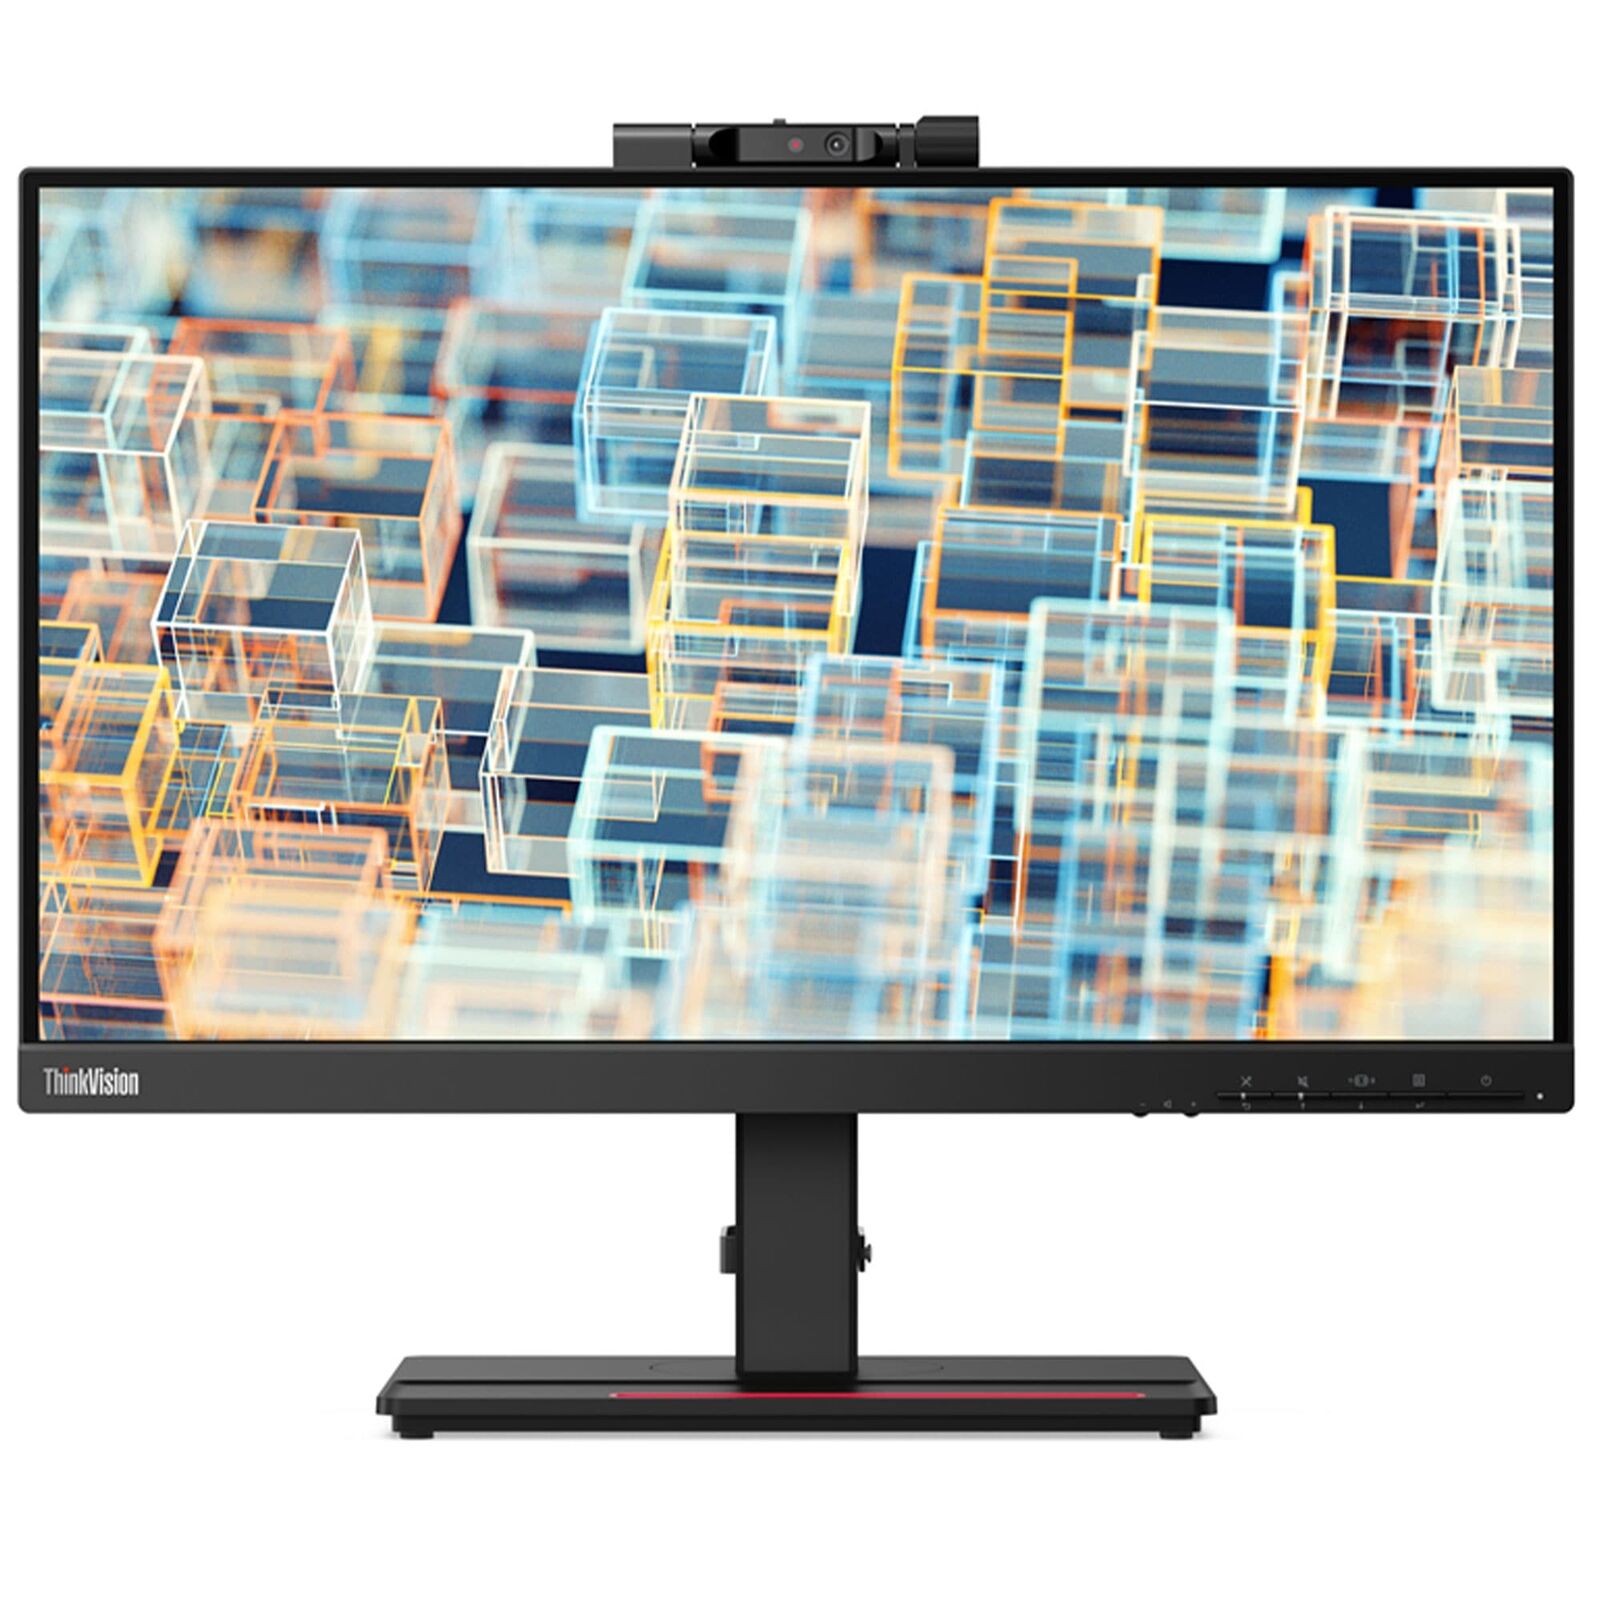 Lenovo ThinkVision 21.5 inch Monitor - T22v-20, GB